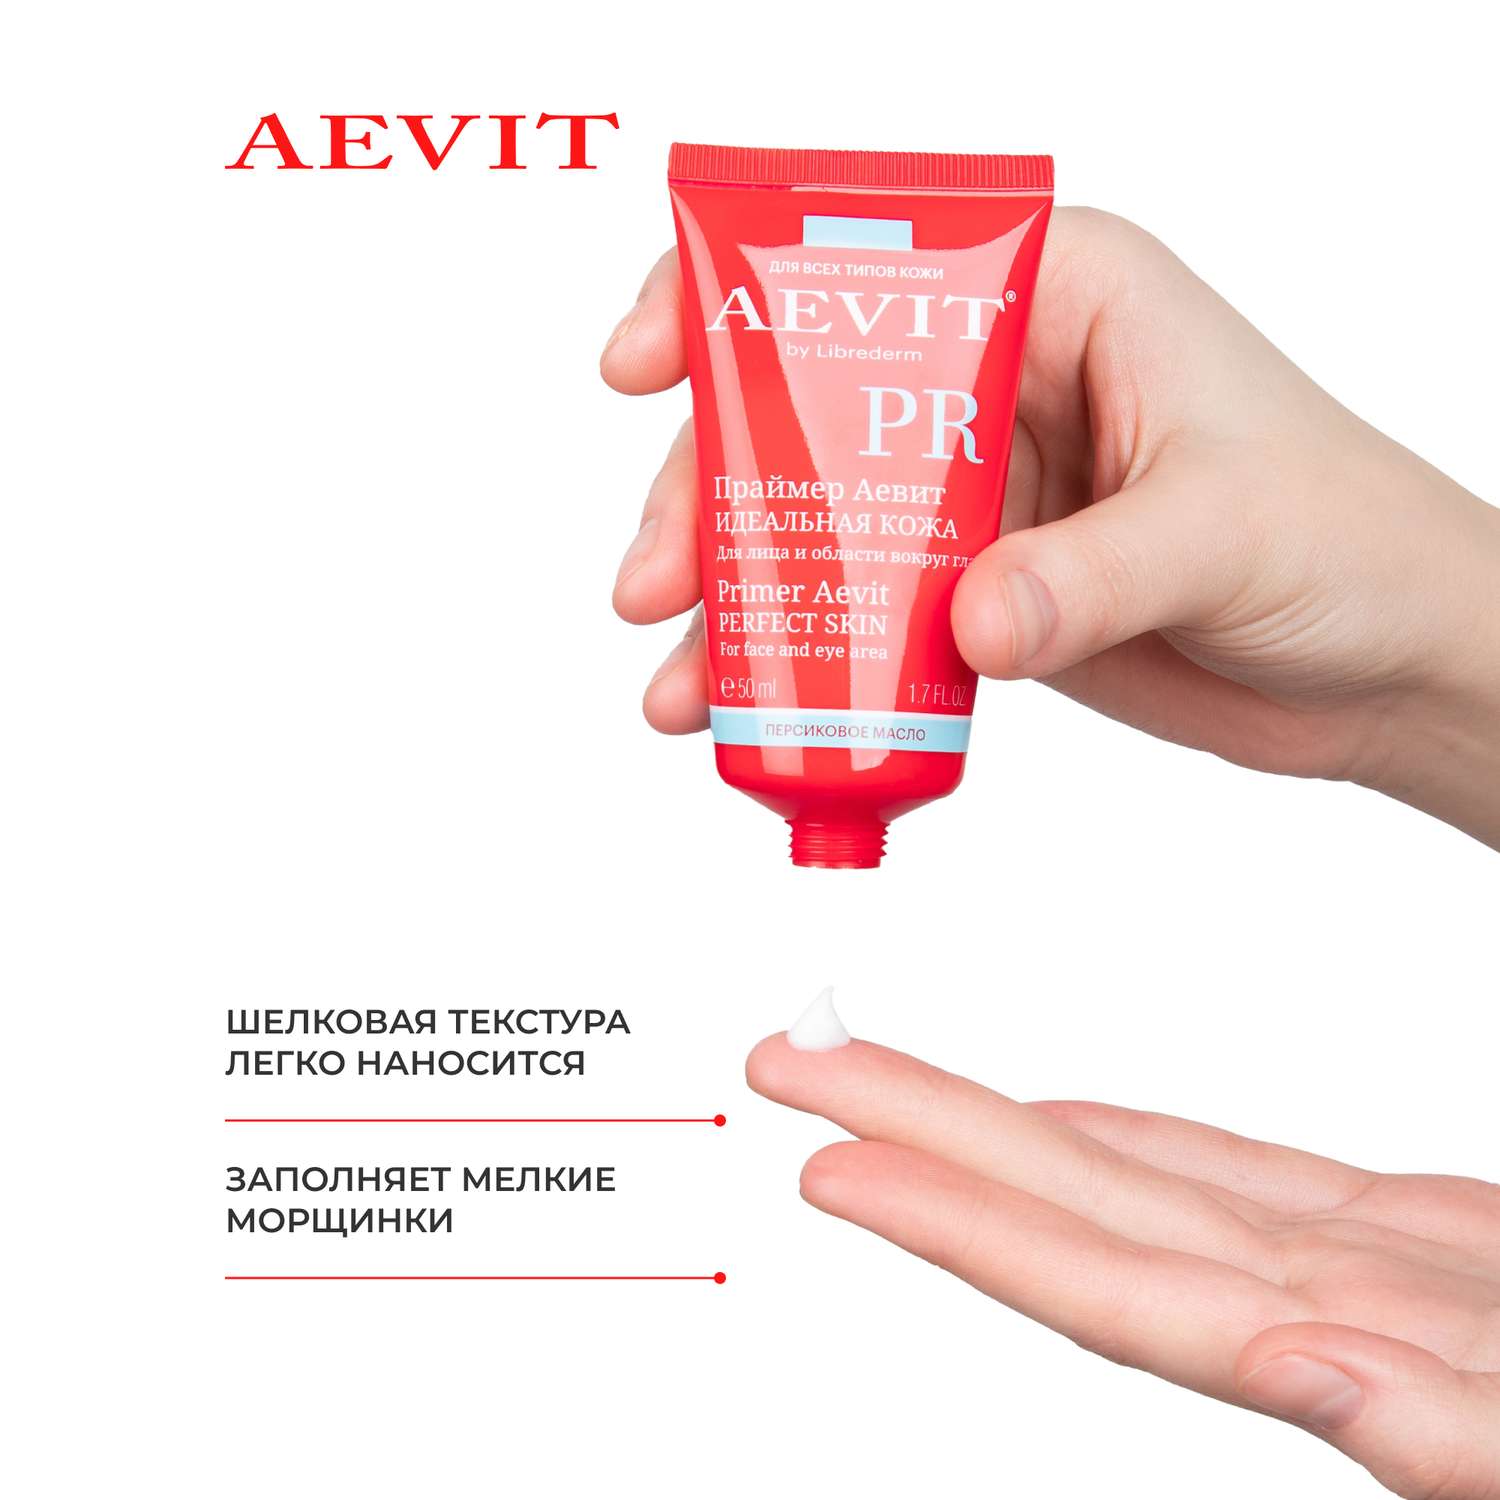 Праймер AEVIT Идеальная кожа для лица и области вокруг глаз No Tone 50 мл - фото 5